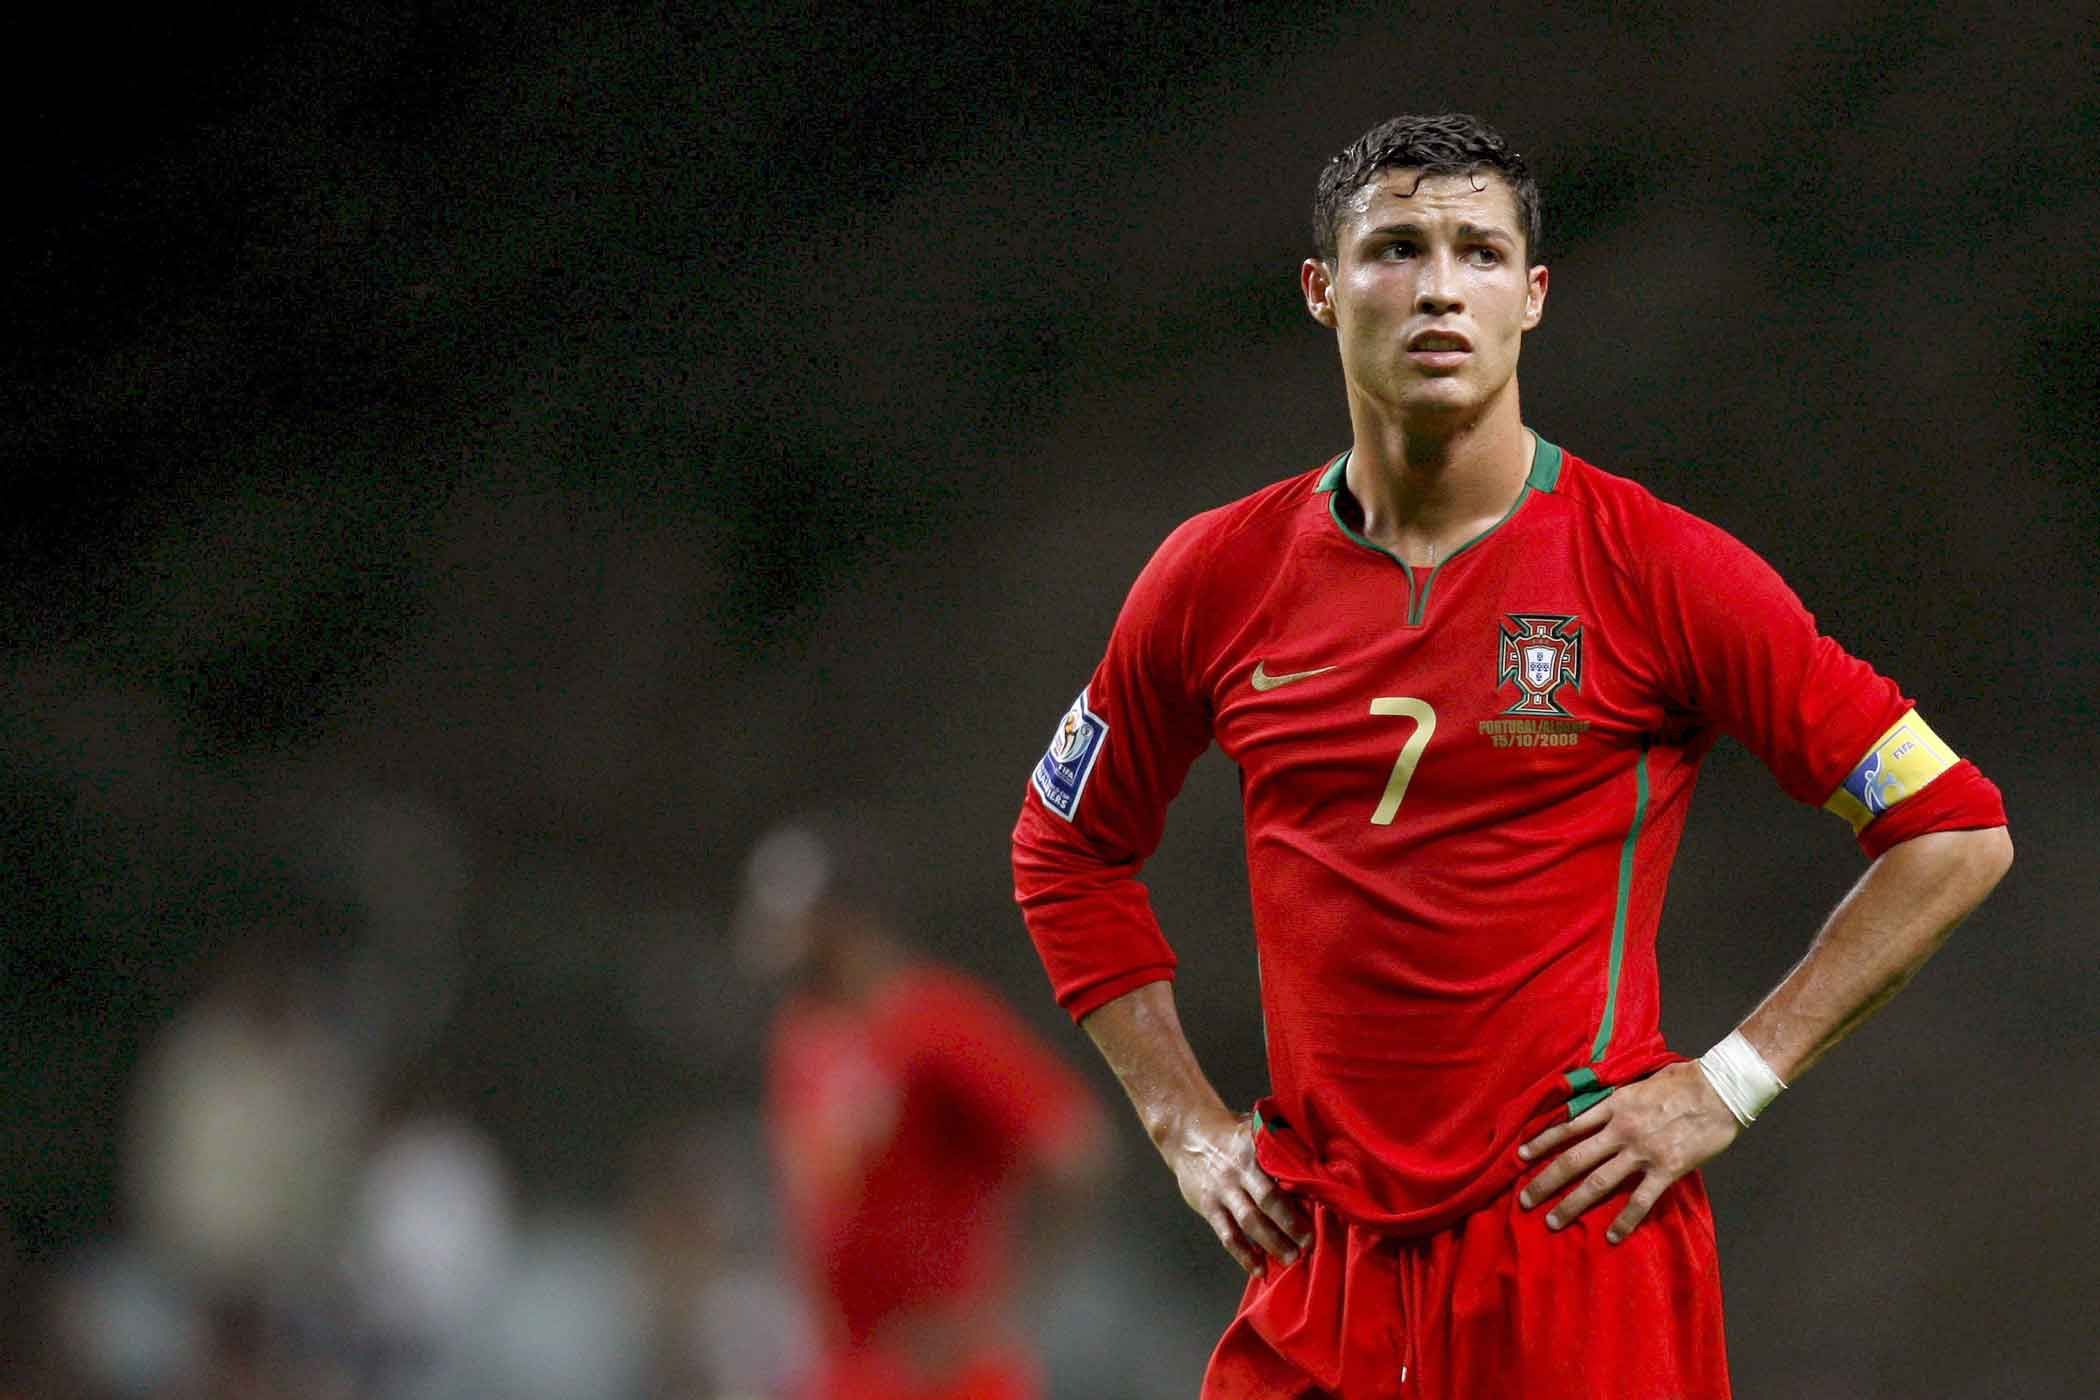 Sad Cristiano Ronaldo Portugal 2008 wallpaper - Cristiano Ronaldo ...